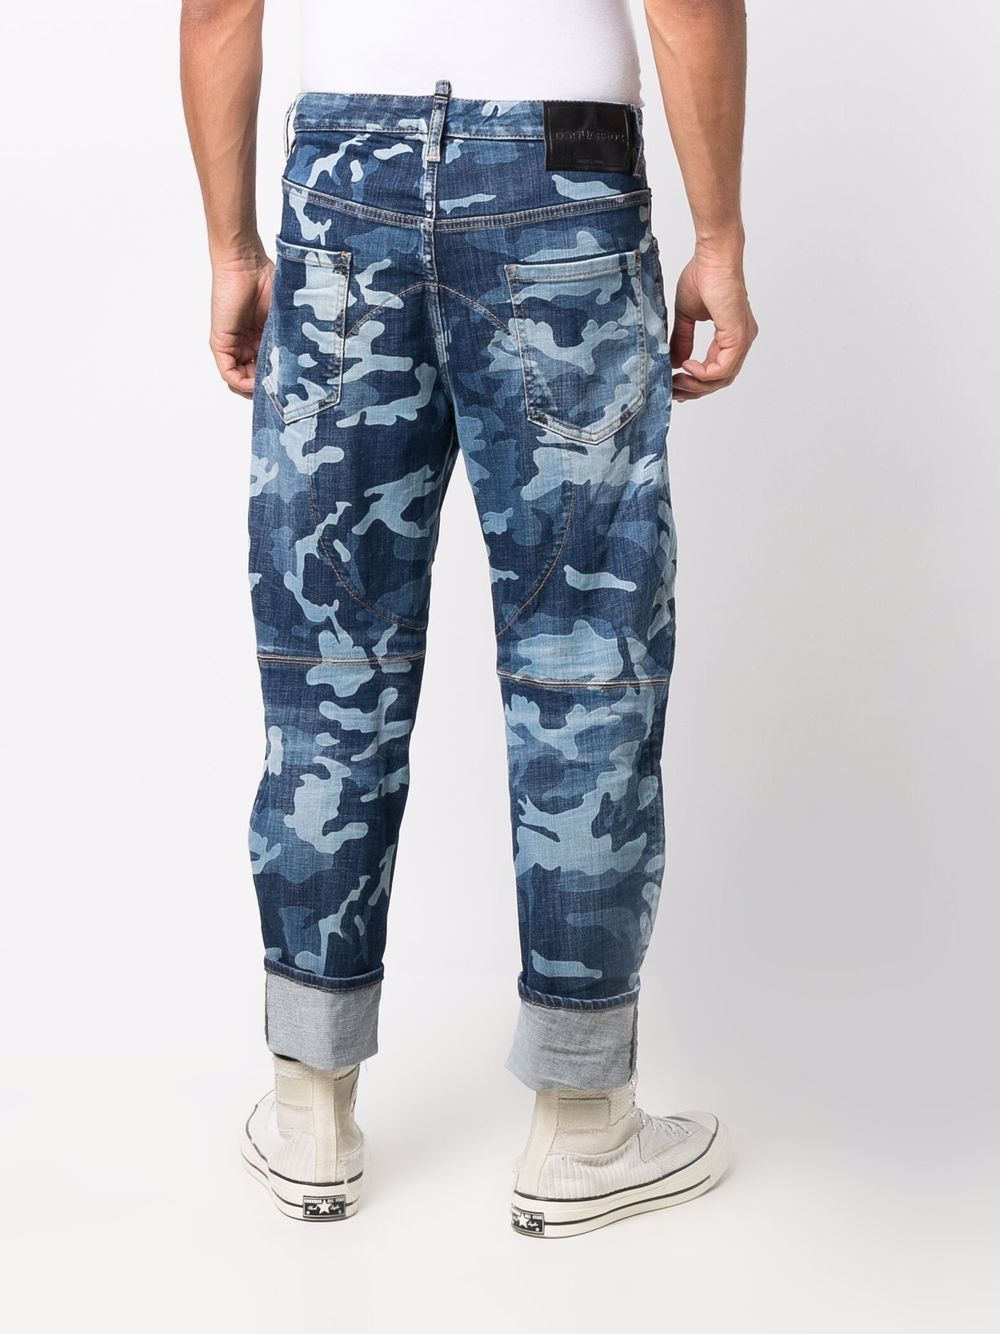 фото Dsquared2 джинсы с камуфляжным принтом